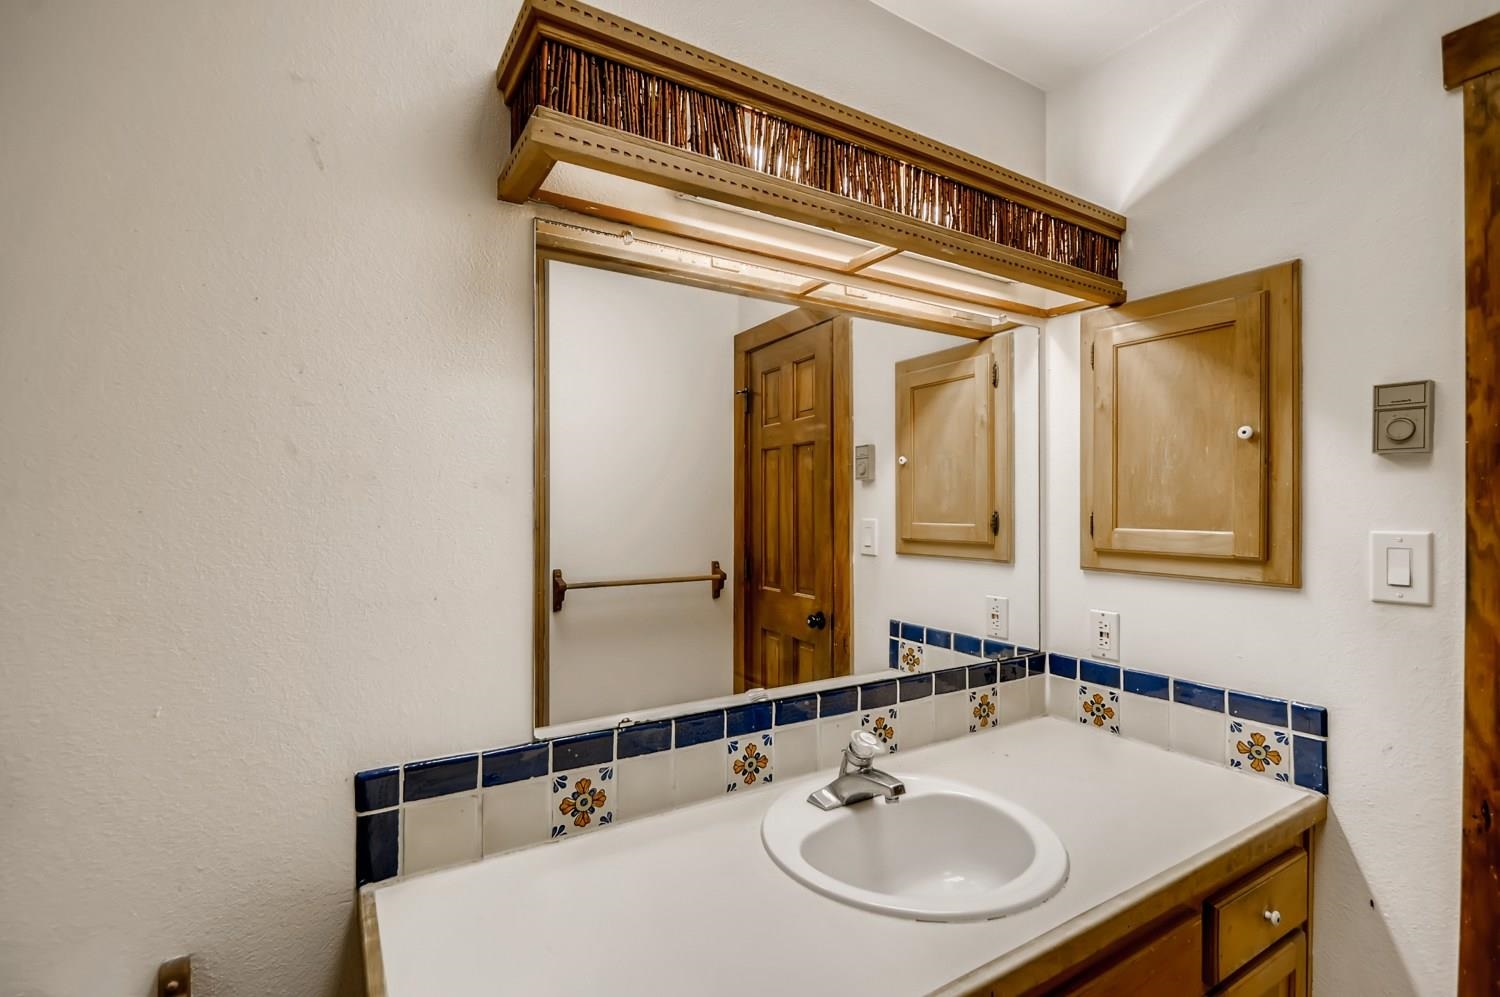 33 Azul, Santa Fe, New Mexico 87508, 3 Bedrooms Bedrooms, ,2 BathroomsBathrooms,Residential,For Sale,33 Azul,202102948